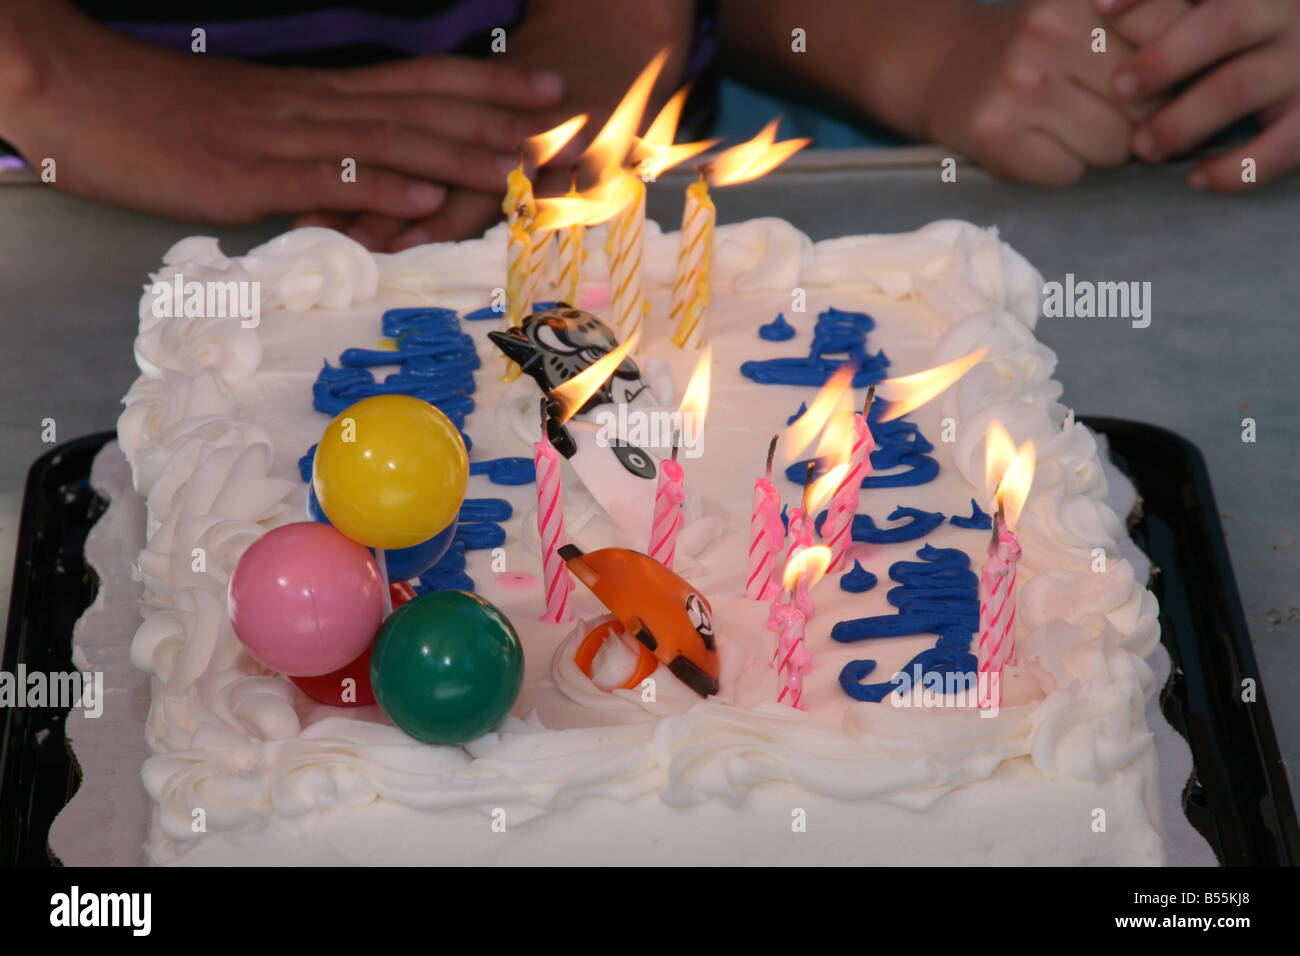 Gâteau d'anniversaire avec des bougies, des mains des enfants attendent patiemment Banque D'Images